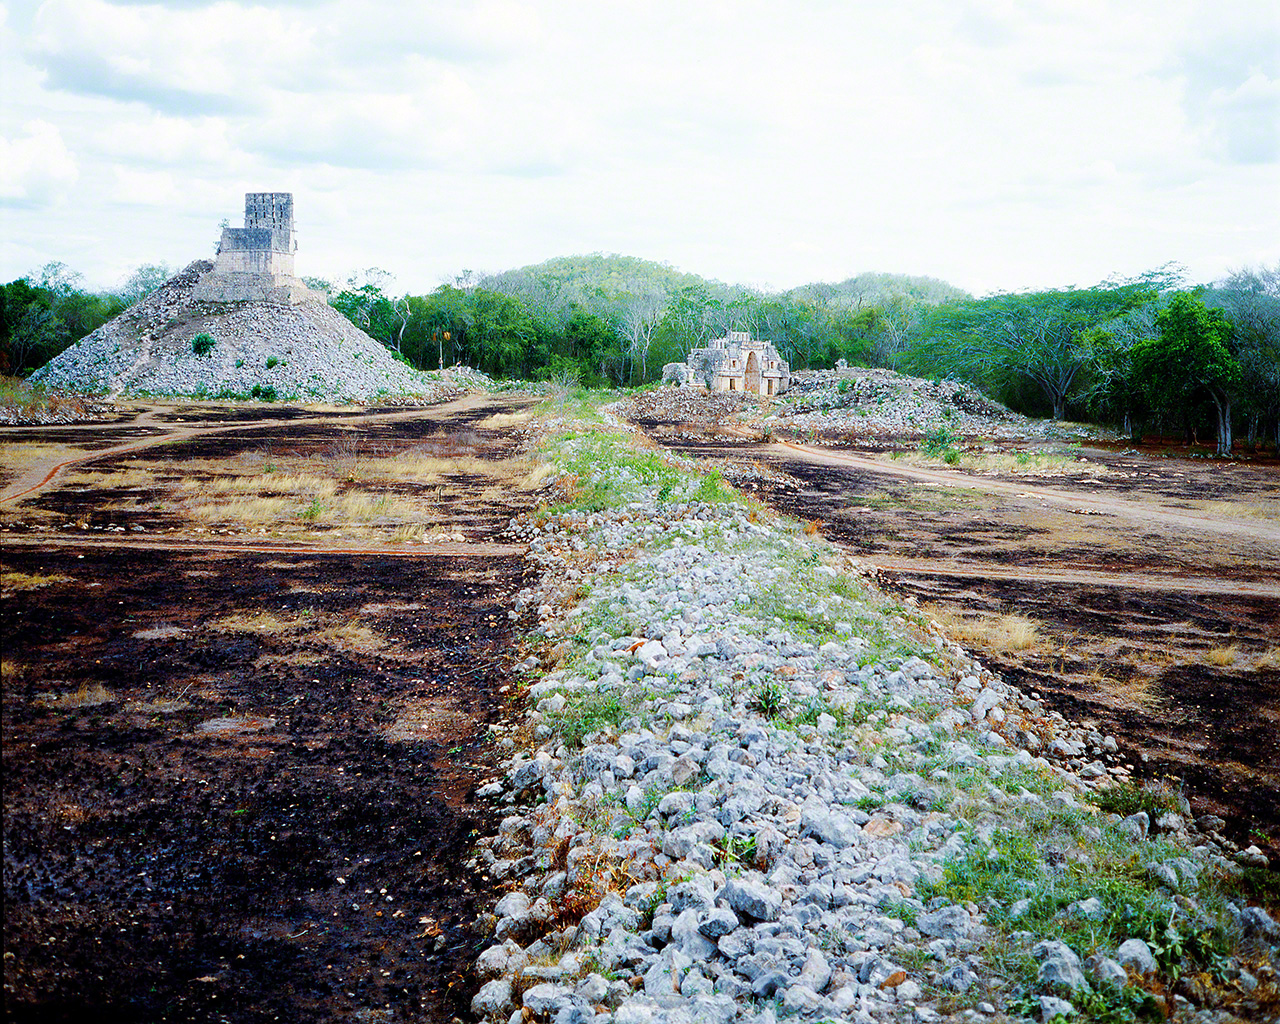 拍攝於1981年。當時我參與挖掘和調查墨西哥瑪雅遺跡一條人工鋪築的路。這段經歷成為我立志做一名節日攝影師的契機